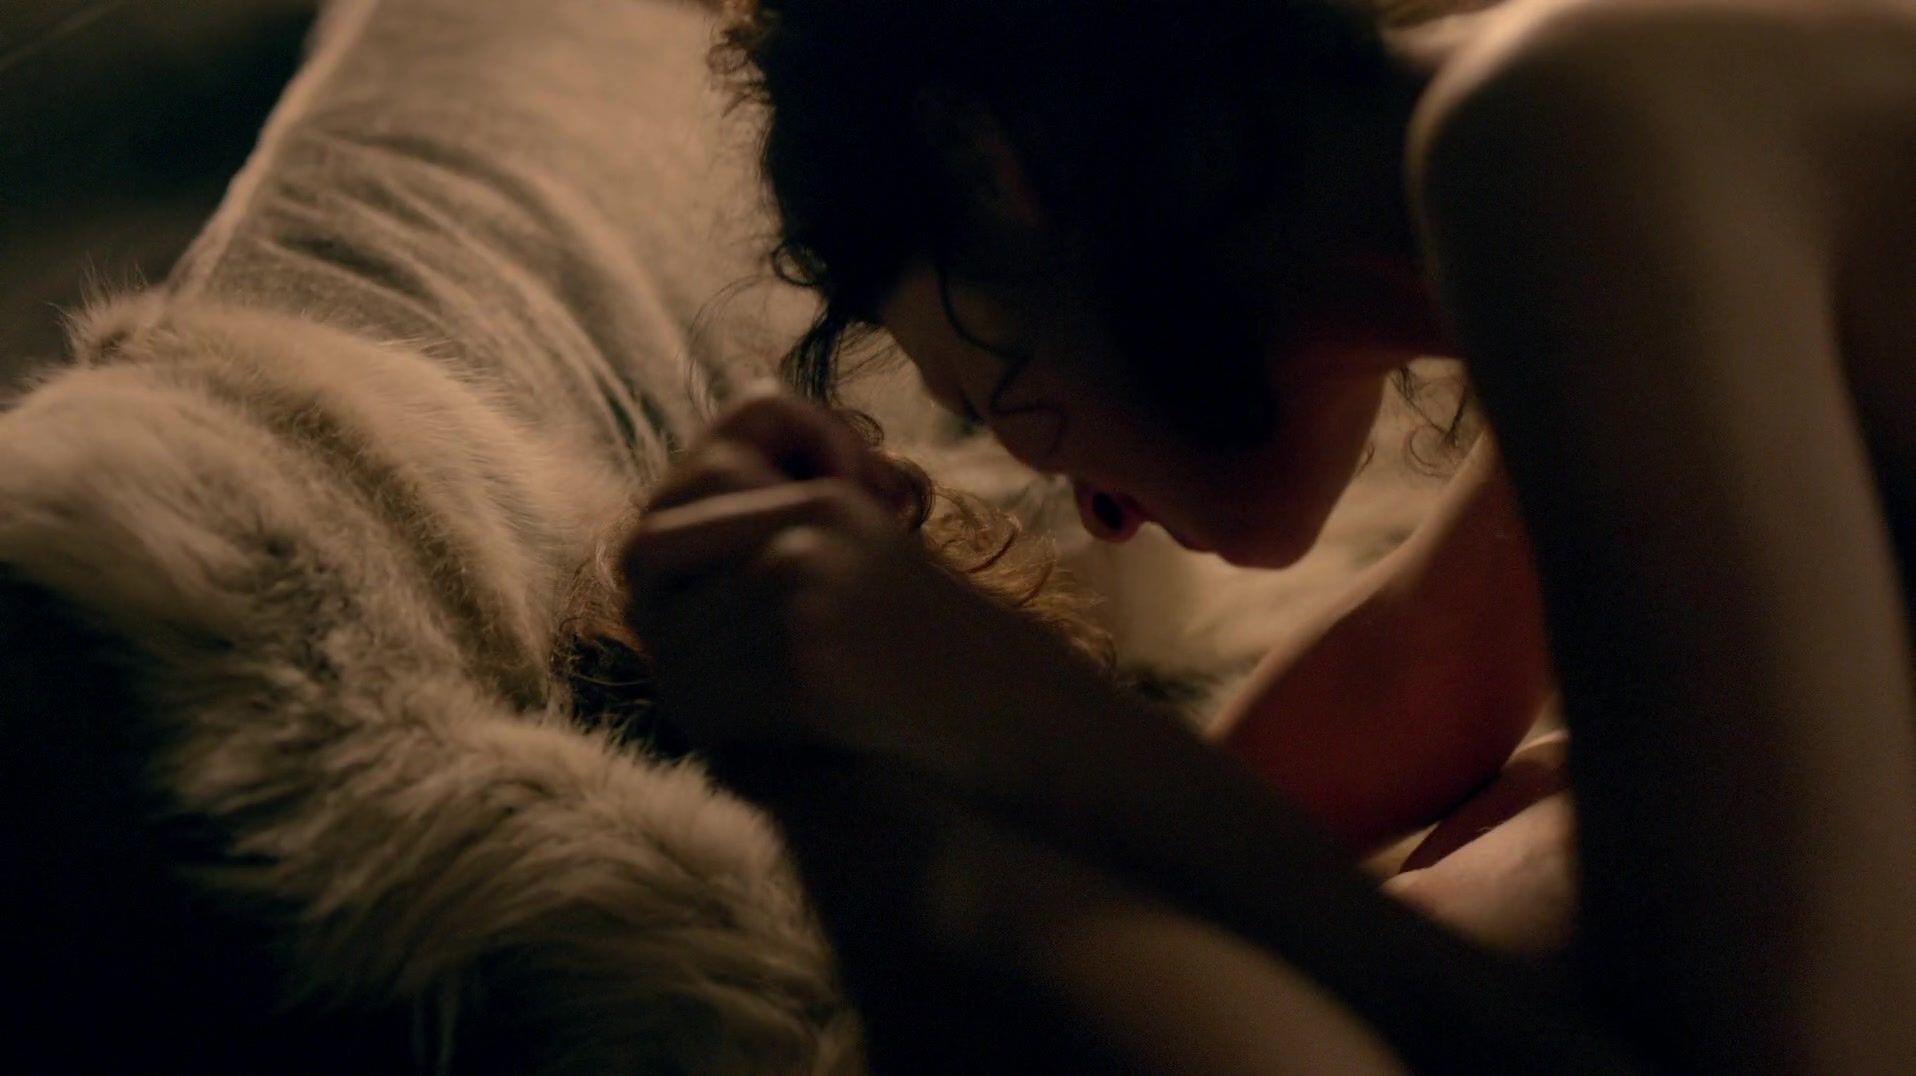 Siririca Sex scene of naked Caitriona Balfe | TV show "Outlander" Hard Fuck